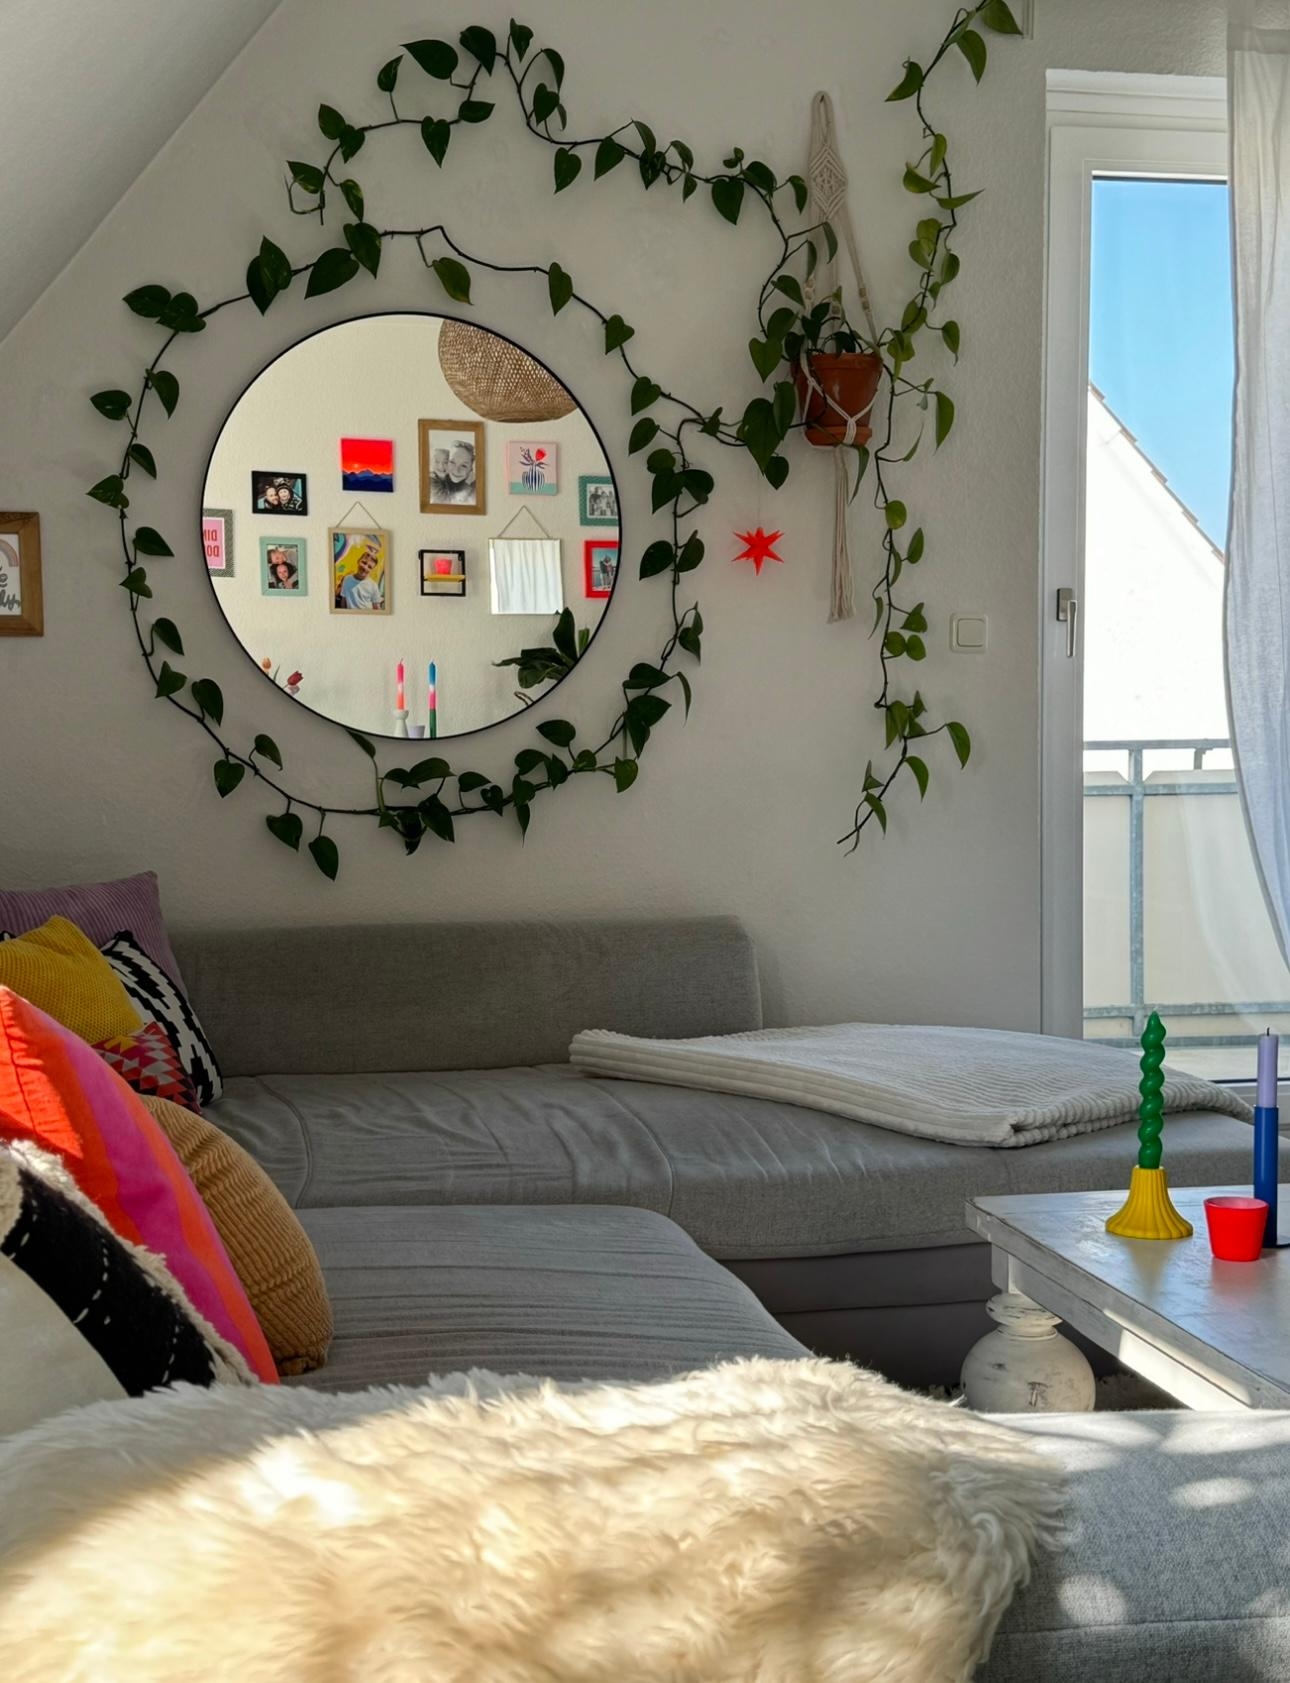 Die andere Seite vom #Wohnzimmer ..die Pflanze ist mittlerweile um den #Spiegel rum gewachsen 💚 #Greenterior #Wandgestaltung #Colourfulhome #Bunteswohnen #Homestory